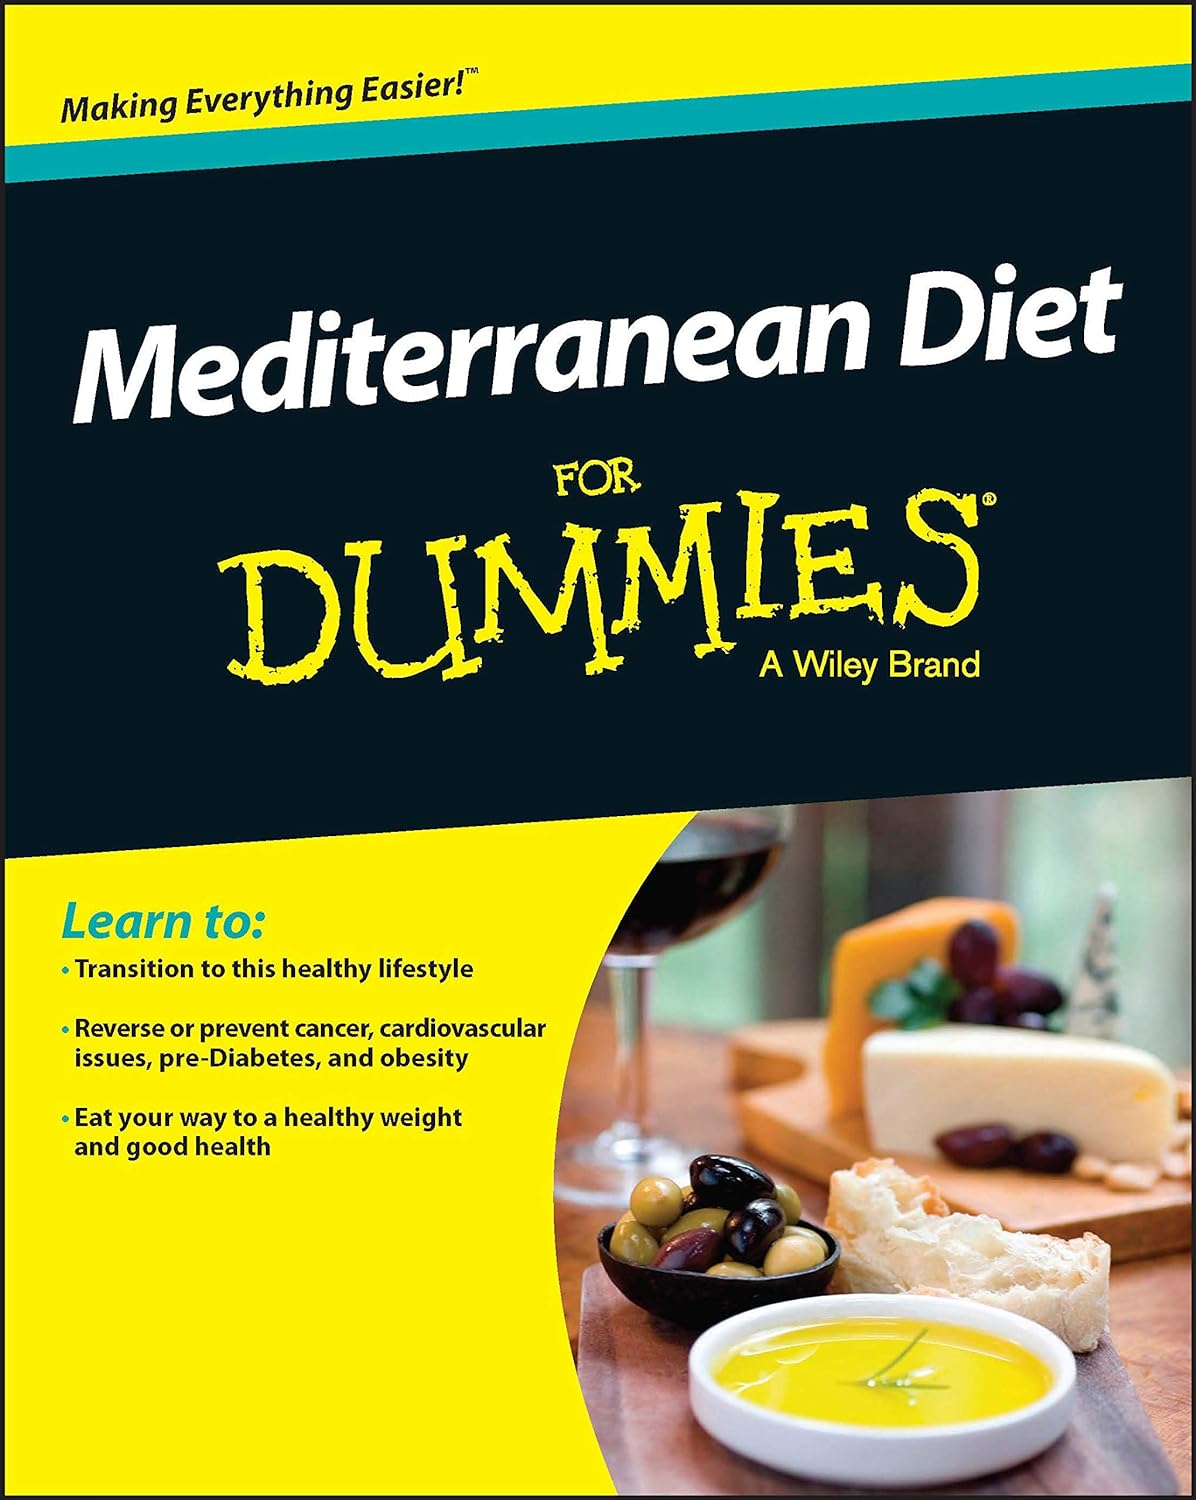 Mediterranean Diet for Dummies Book